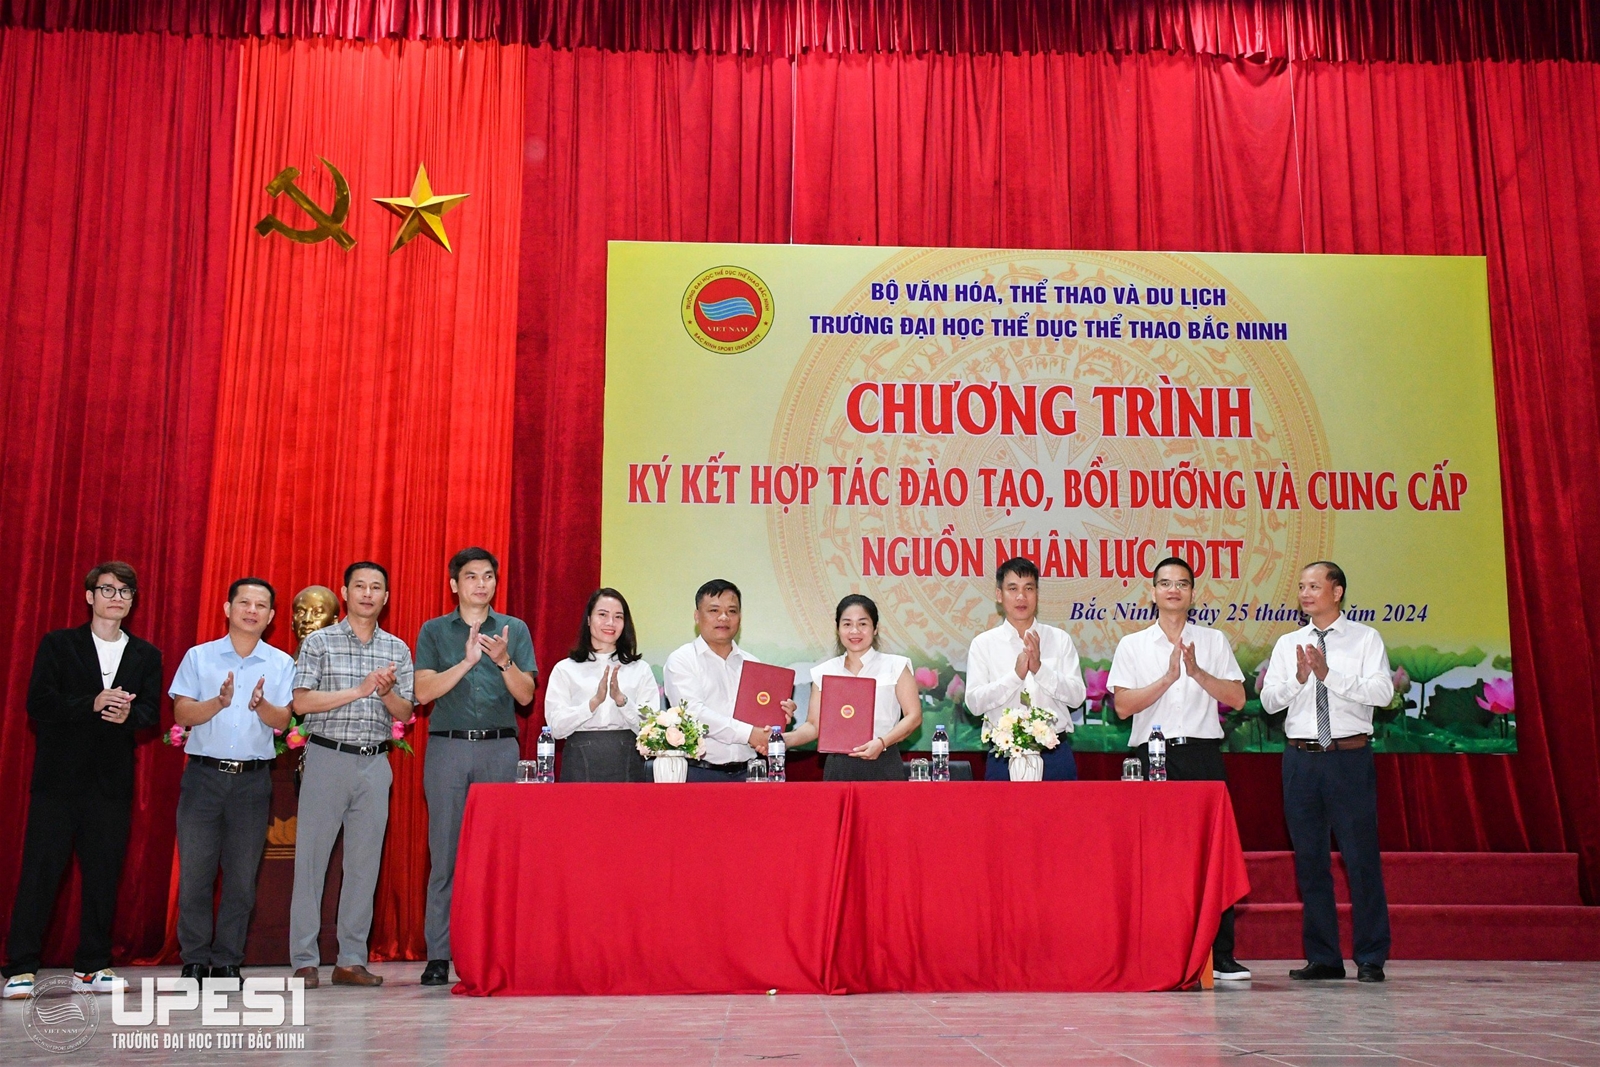 Chương trình ký kết hợp tác đào tạo, bồi dưỡng và cung cấp nguồn nhân lực TDTT tại Trường Đại học TDTT Bắc Ninh năm 2024 - Ảnh 6.